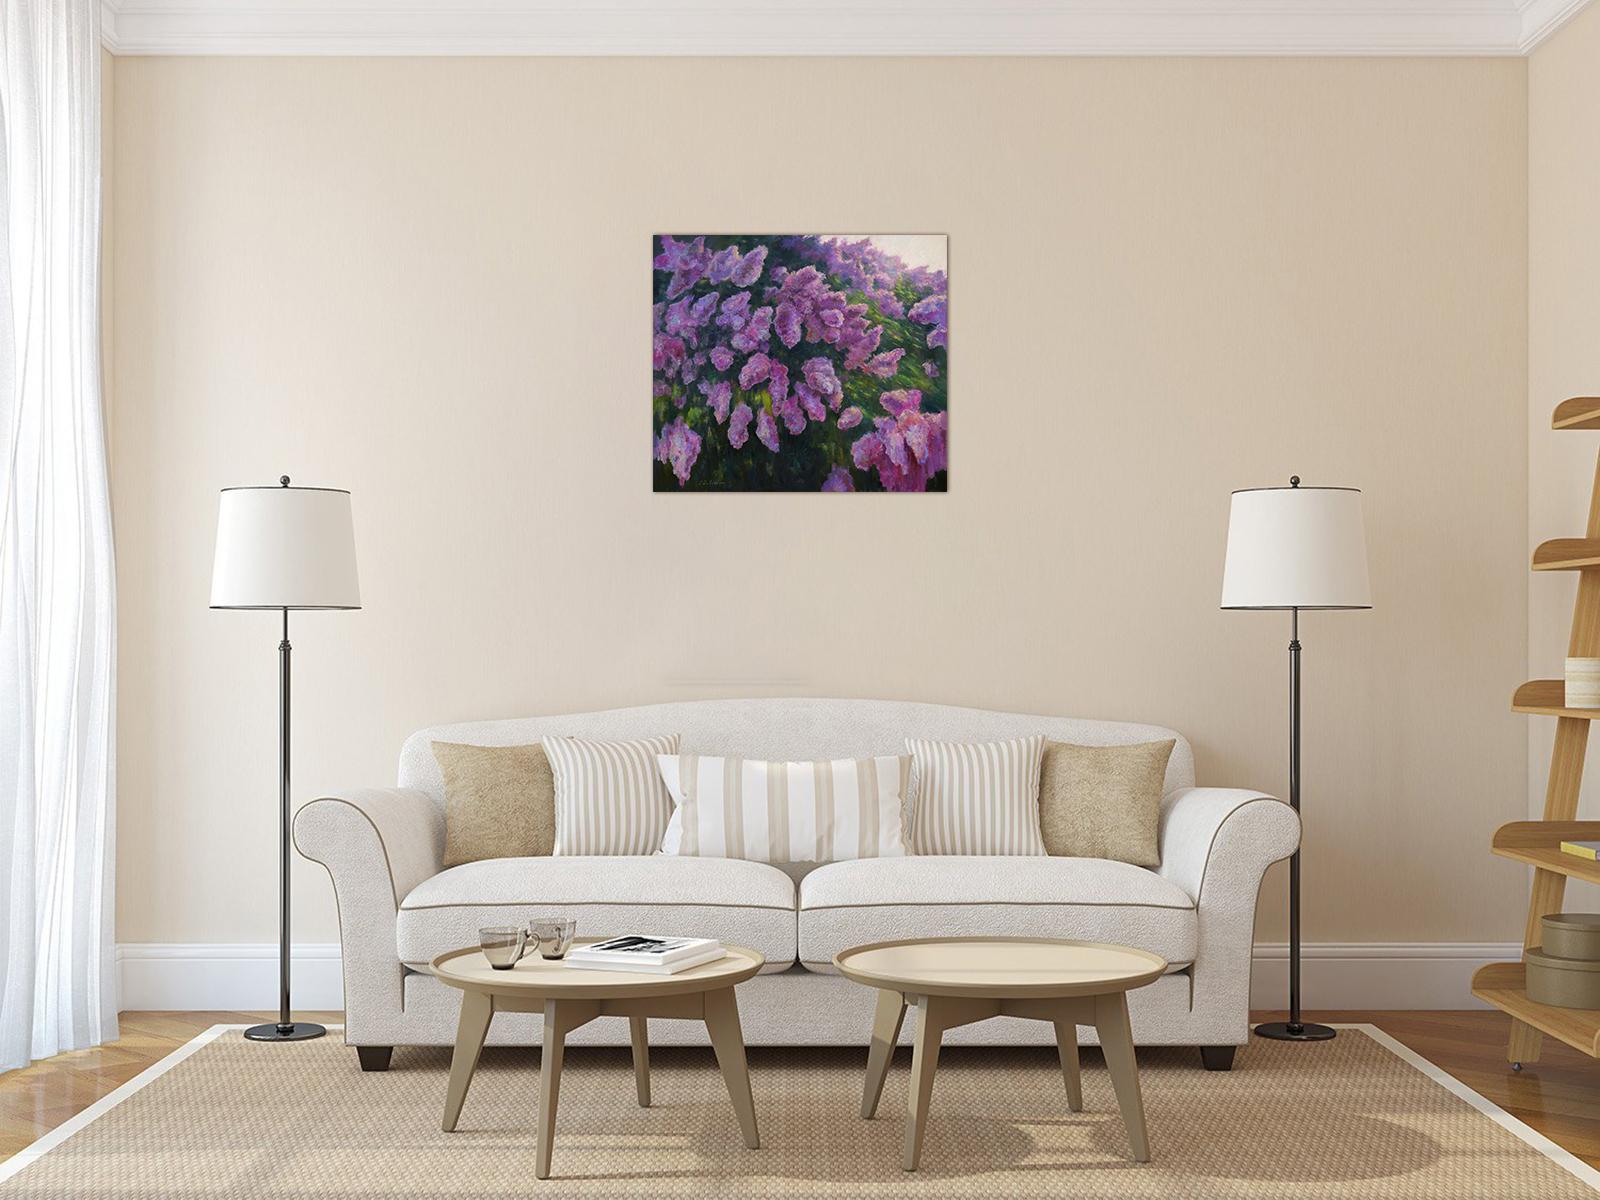 Sunny lilacs Malerei ist ein schönes Zuhause Dekor, lila Blumen der blühenden Baum wird Ihr Haus mit einem wunderbaren Duft zu füllen und geben Sie nur eine gute Stimmung. Dieses Gemälde ist eines der besten Werke des Künstlers. Die Kombination